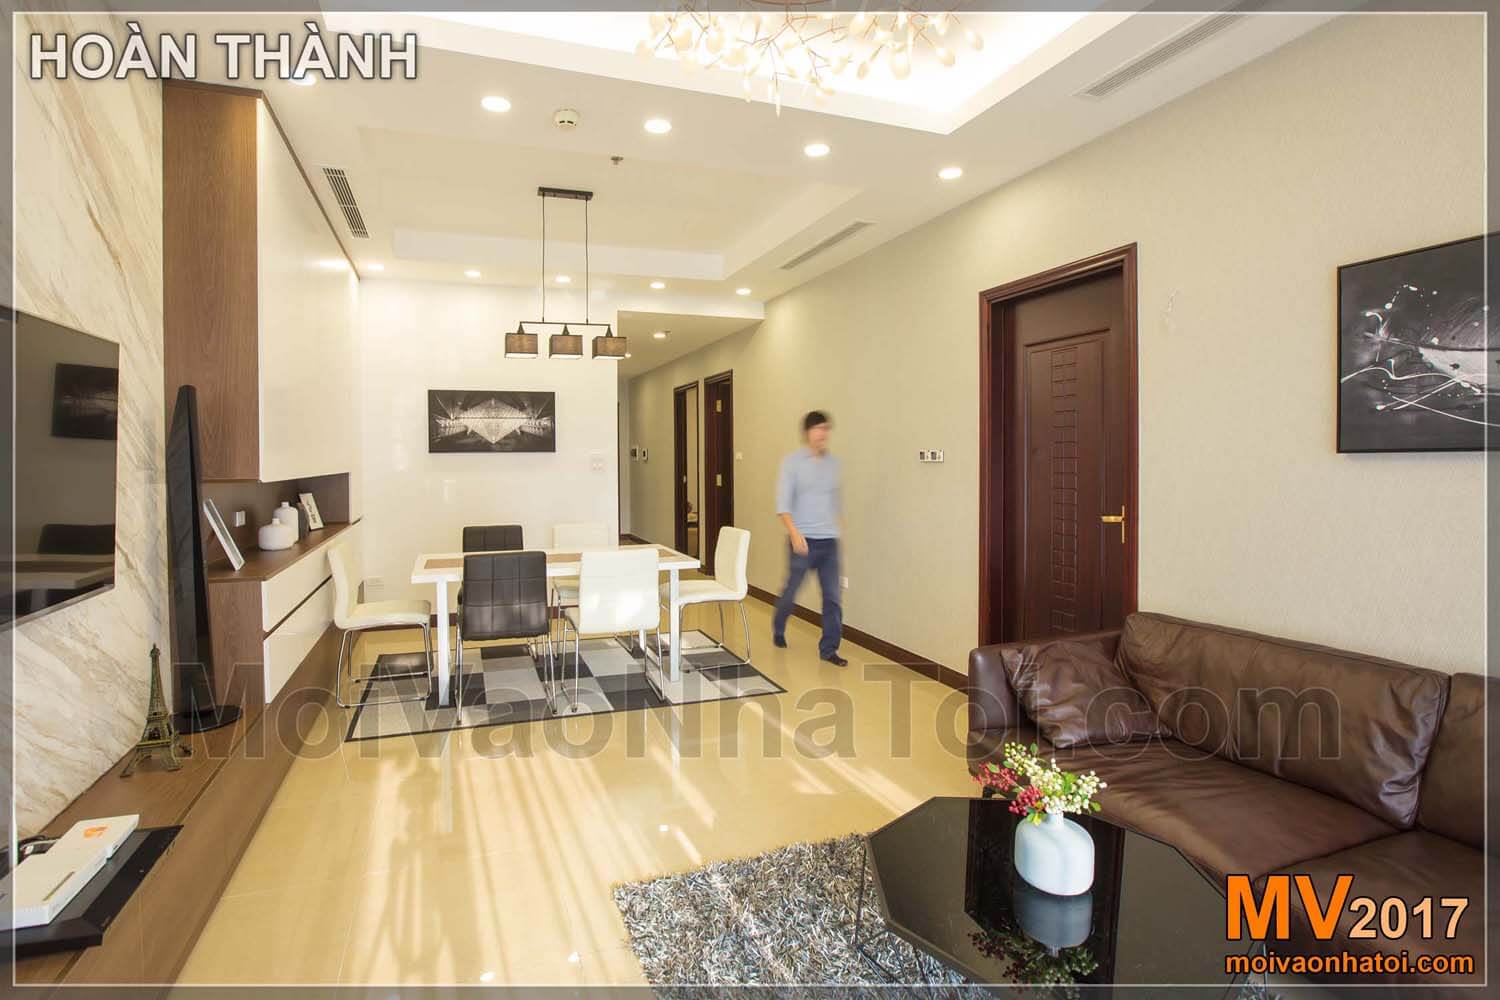 设计和建造皇家城市公寓的客厅100平方米